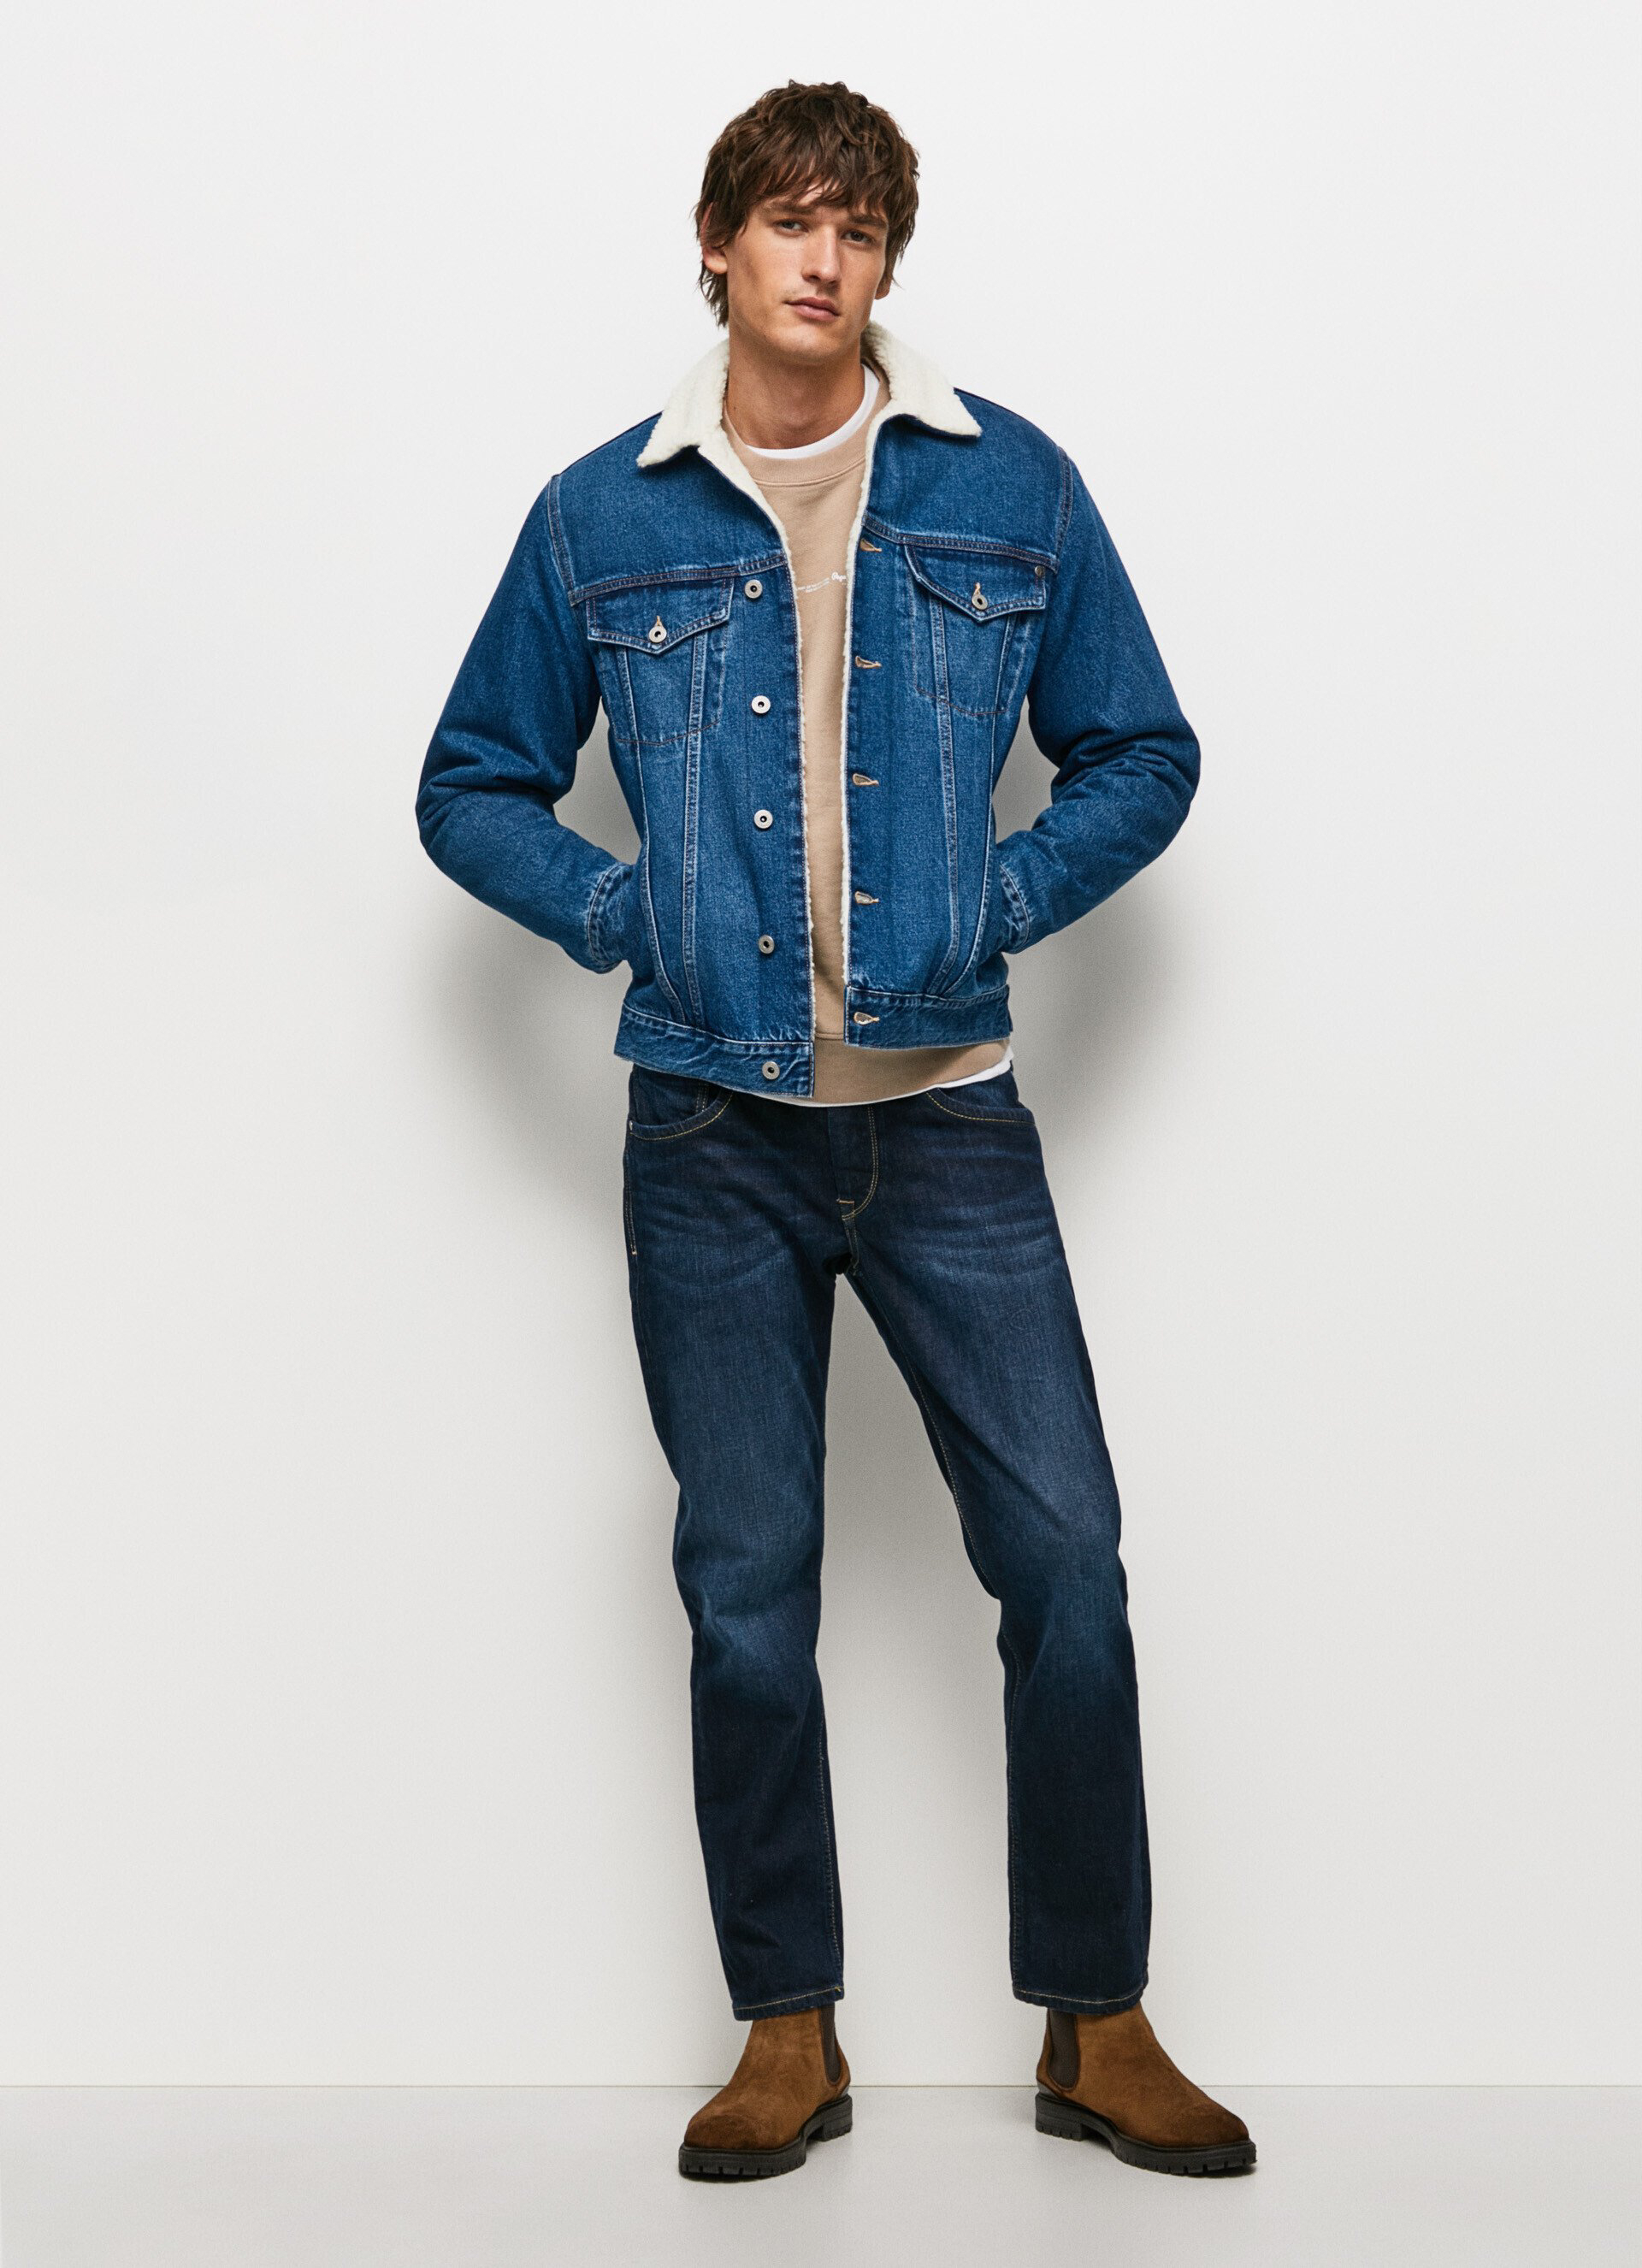 Pepe Jeans pánská džínová Pinner bunda - XXL (000)